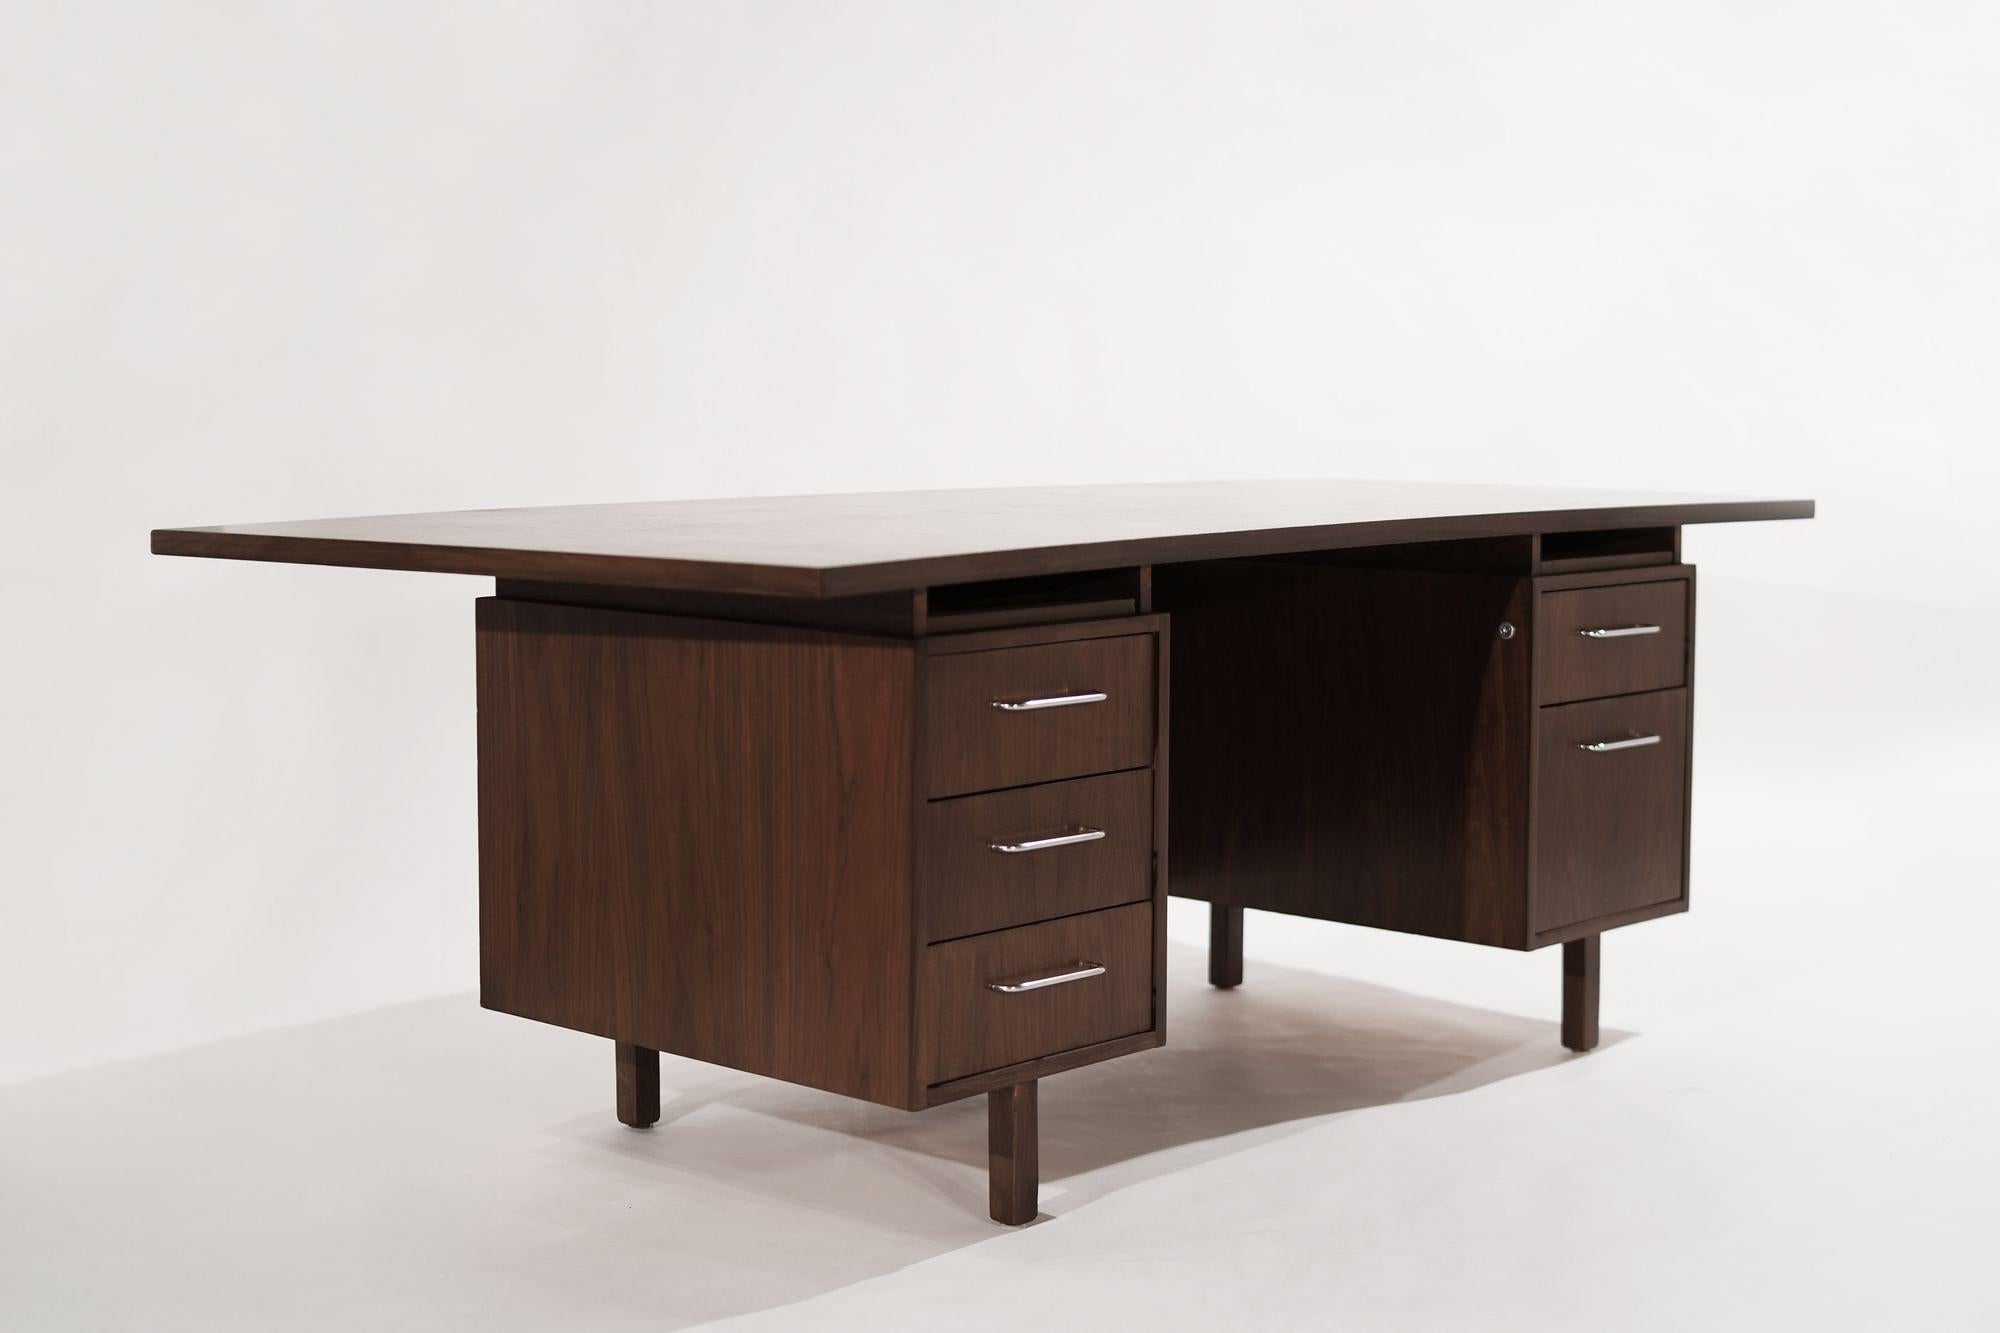 Großformatiger Schreibtisch aus Nussbaumholz, entworfen von Harvey Probber, ca. 1950-1959. Vollständig restauriert, mit originaler Oberfläche und Funktionalität, mit einer konvexen Platte und Nickelbeschlägen. Coates ist mit unserer speziellen